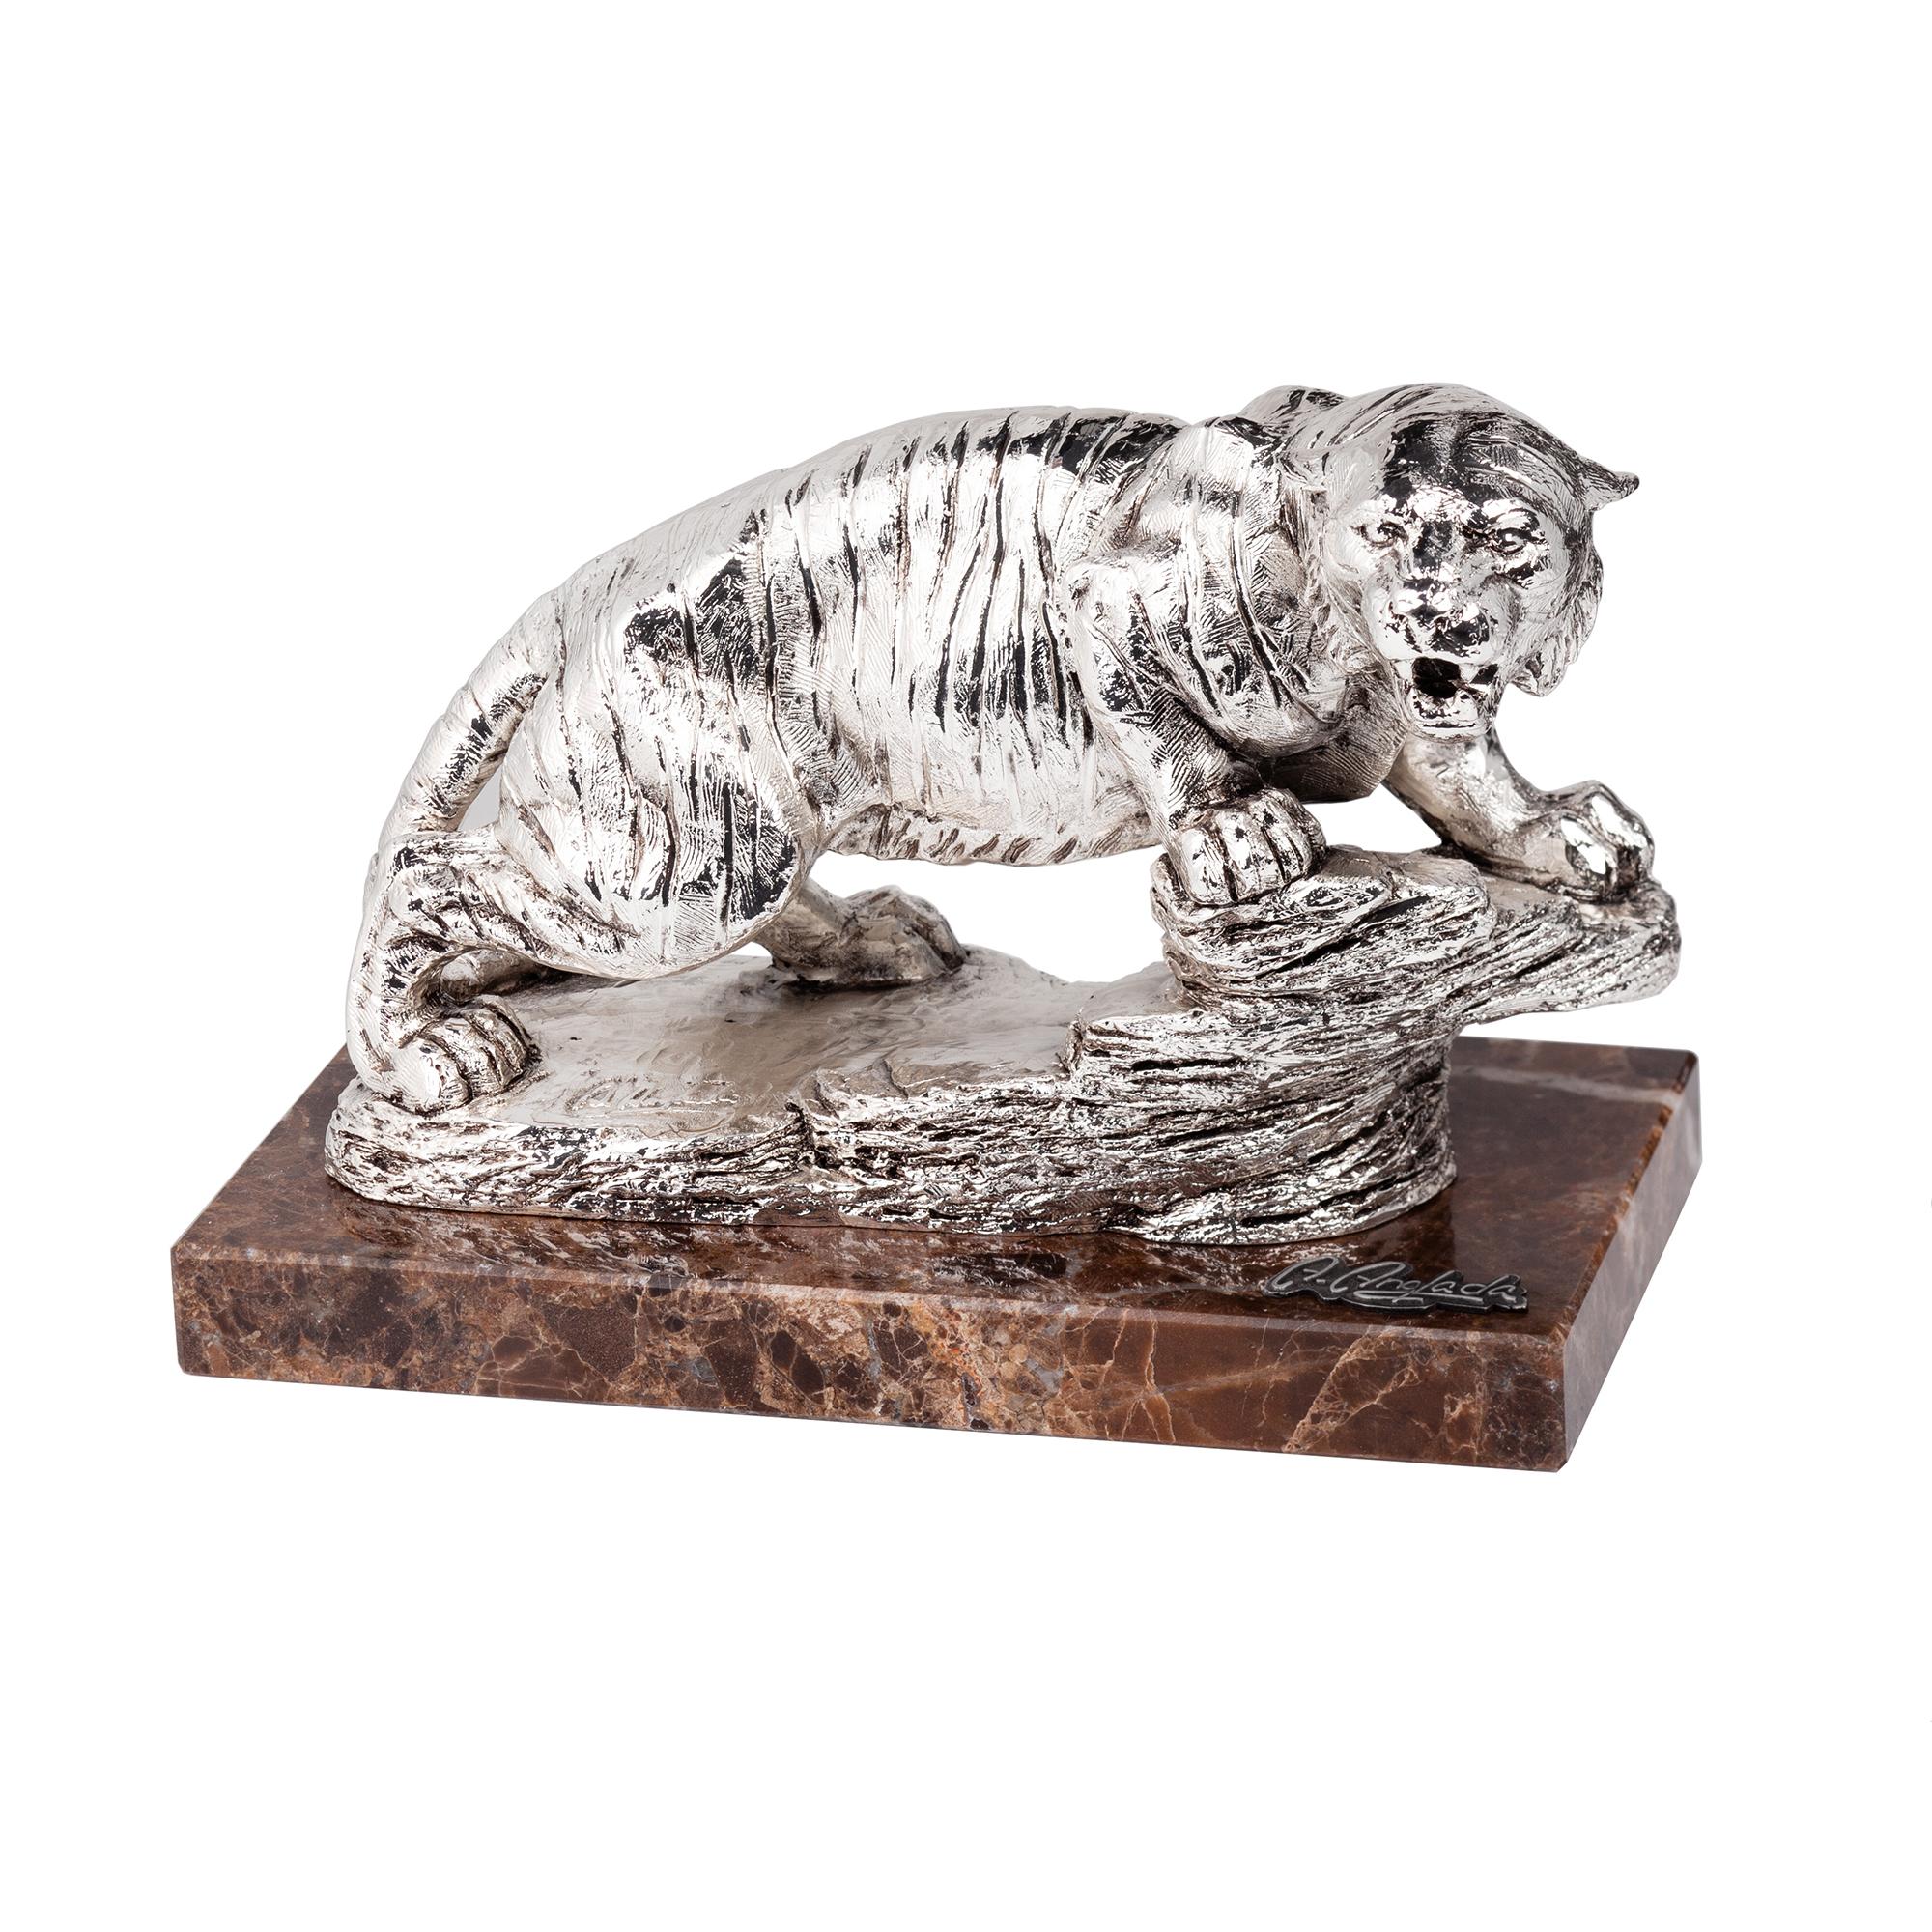 Скульптура "Тигр", цвет серебристый, арт. 564P в каталоге “Океан бизнес сувениров” для оптовых заказов